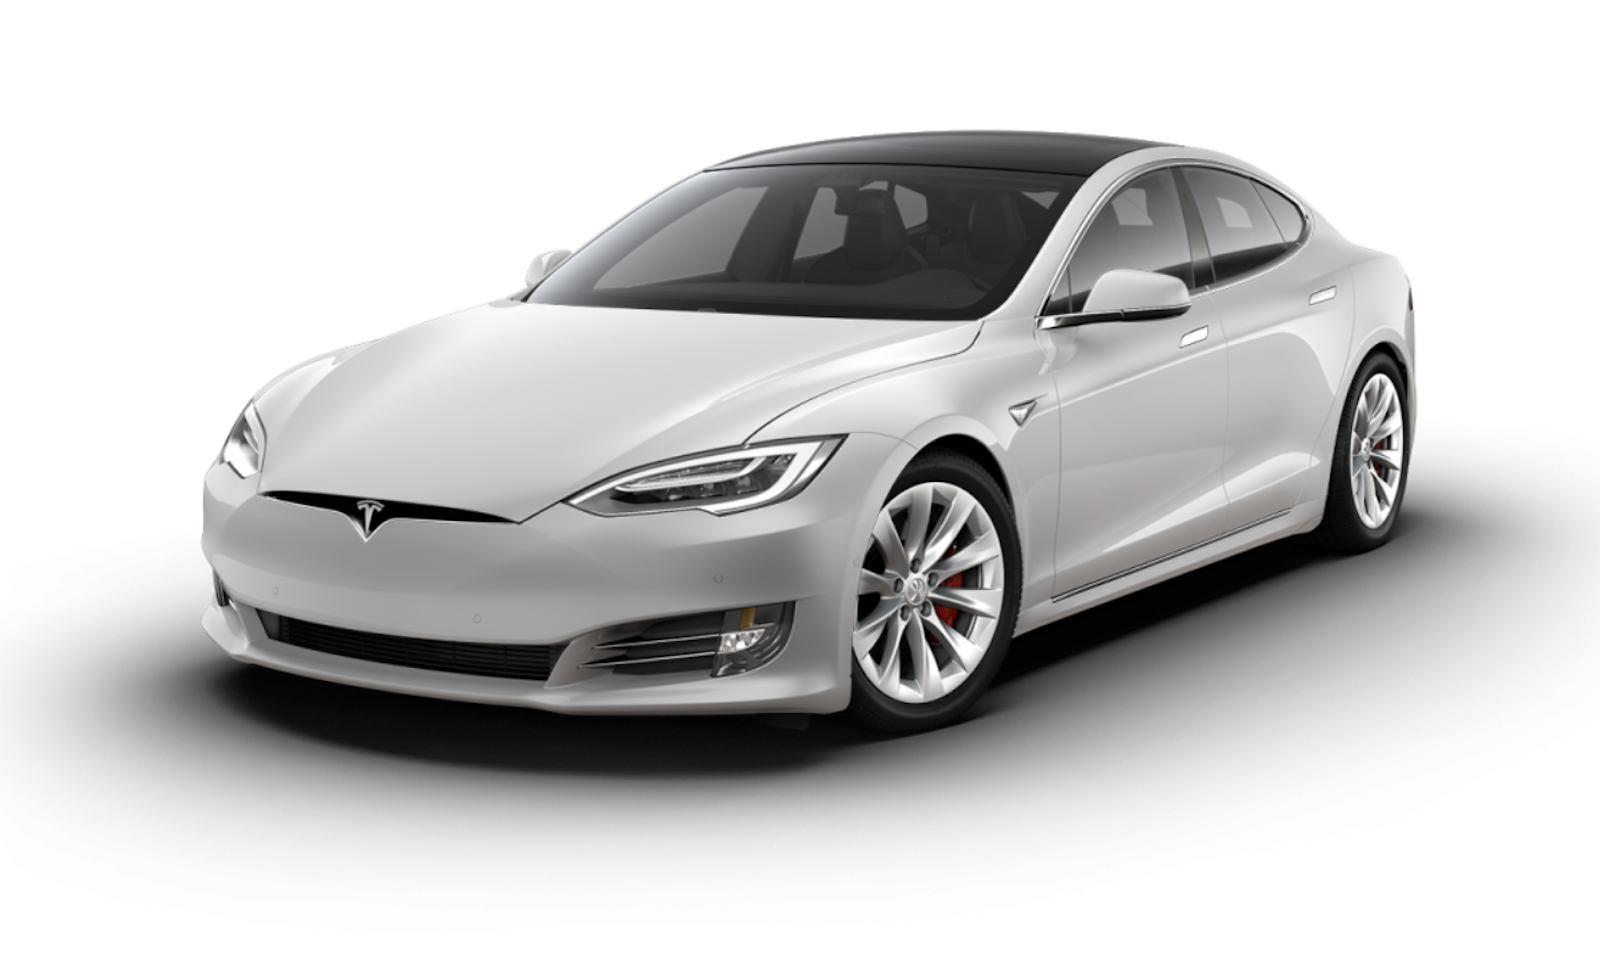 Articulatie Occlusie ontwerp Officieel: Tesla Model S Plaid is bloedsnel en spotgoedkoop - Autoblog.nl